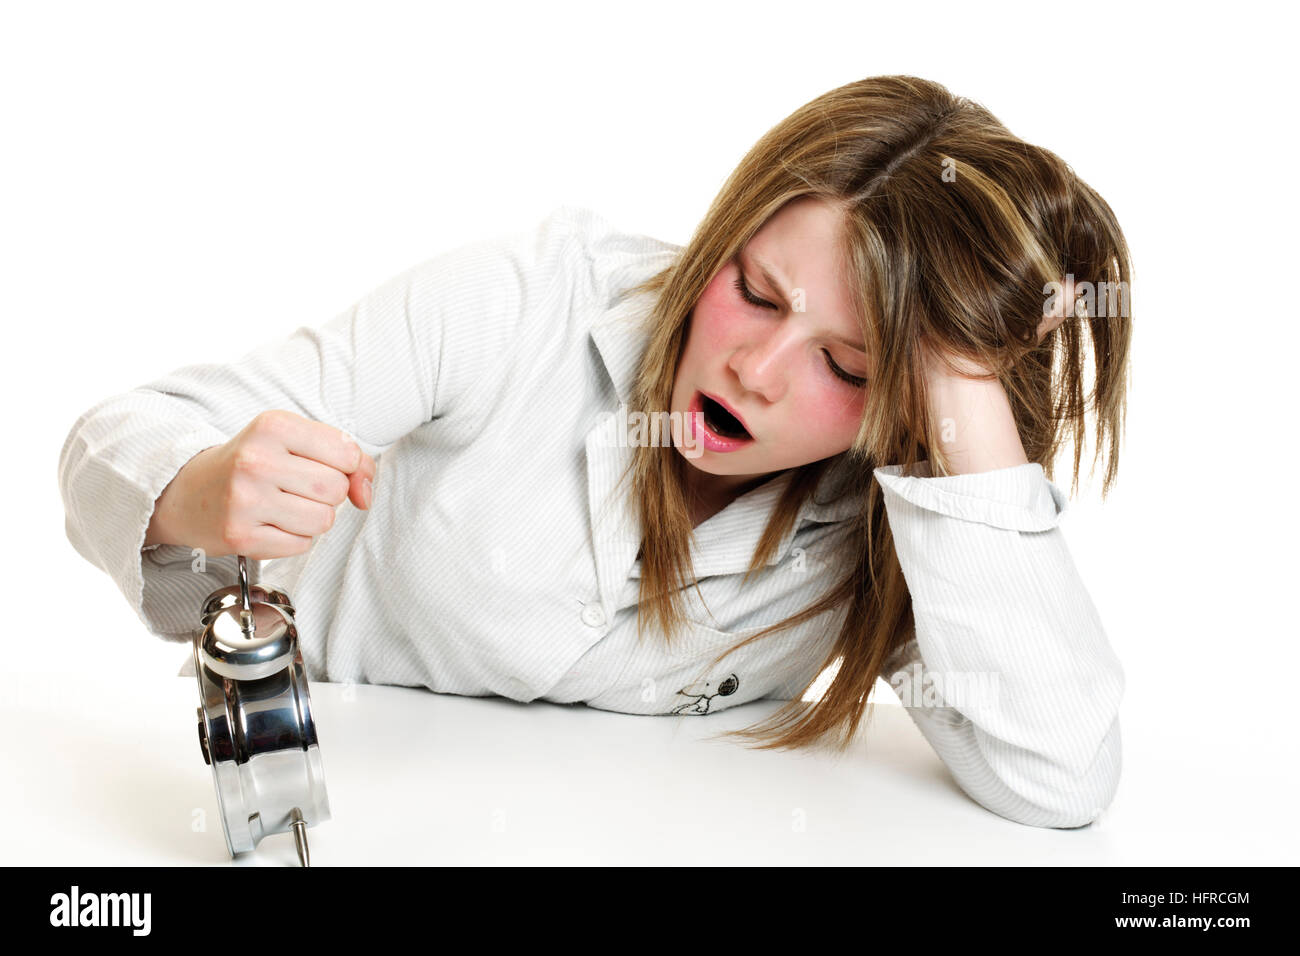 Girl wearing pajamas hitting an alarm clock, yawning Stock Photo